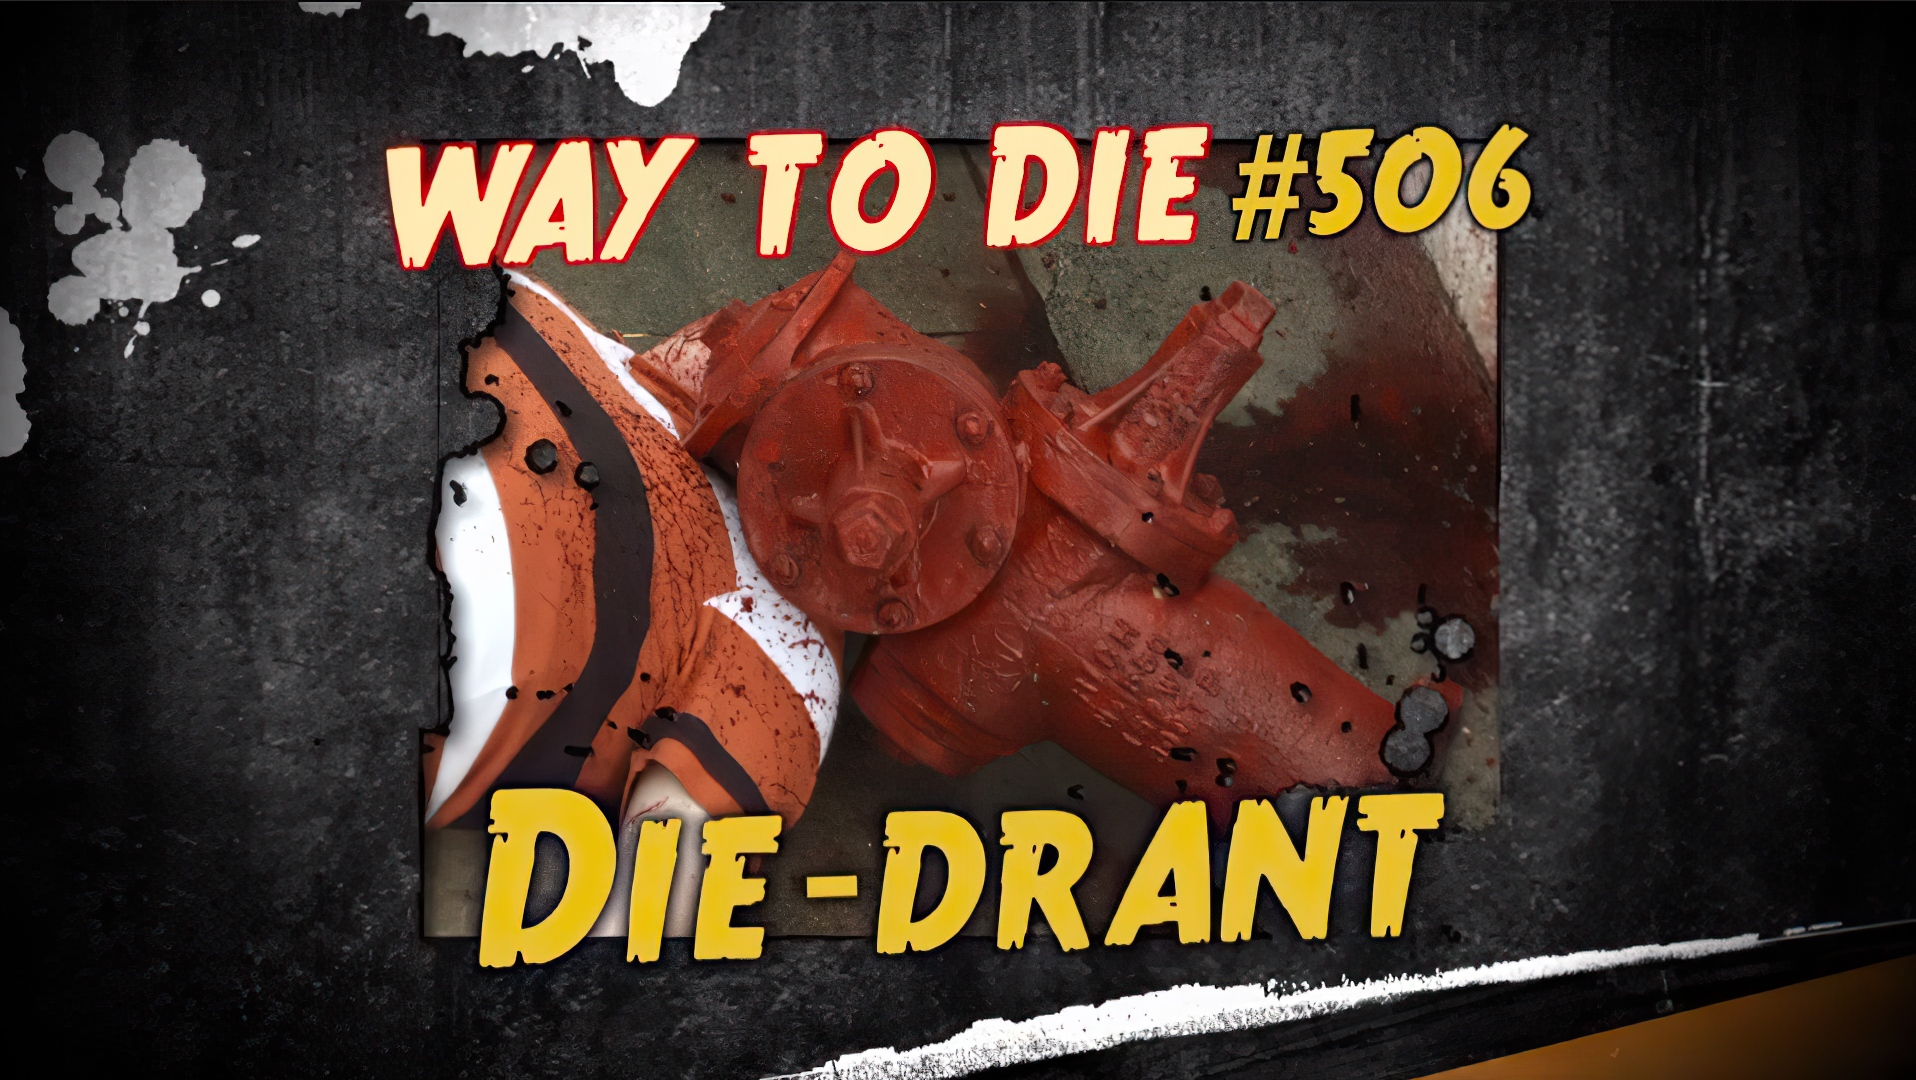 1000 ways to die d-parted